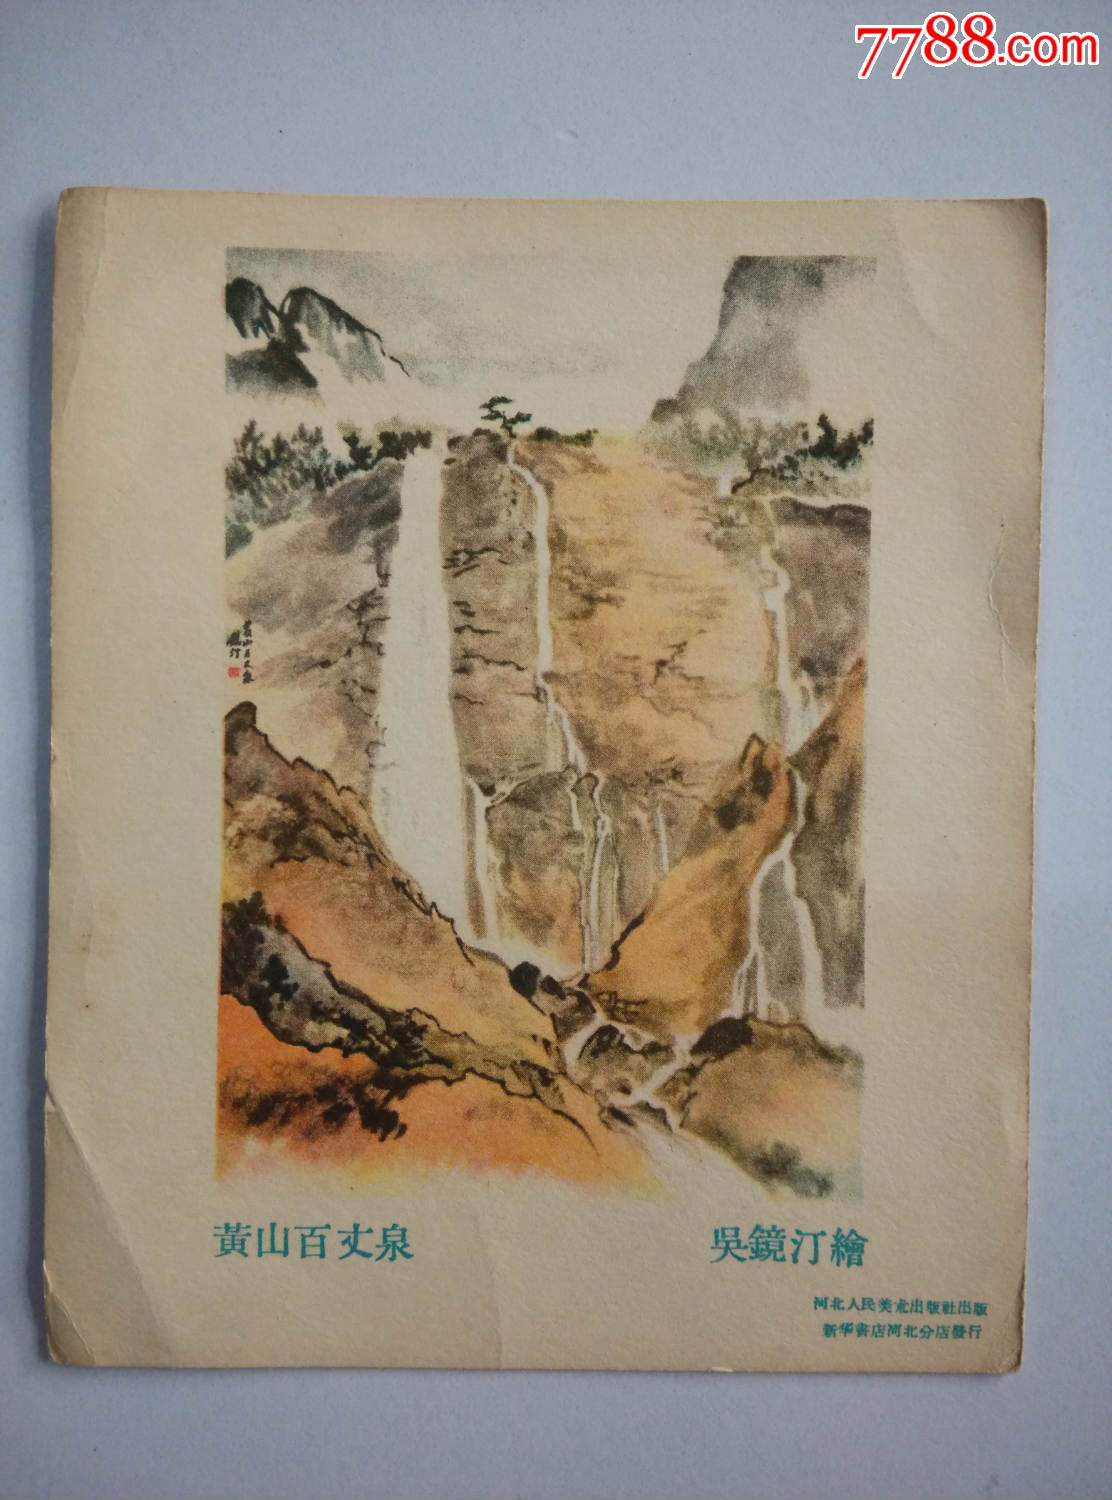 黄山百丈泉(黄山)吴镜汀绘画;河北人民美术出版社